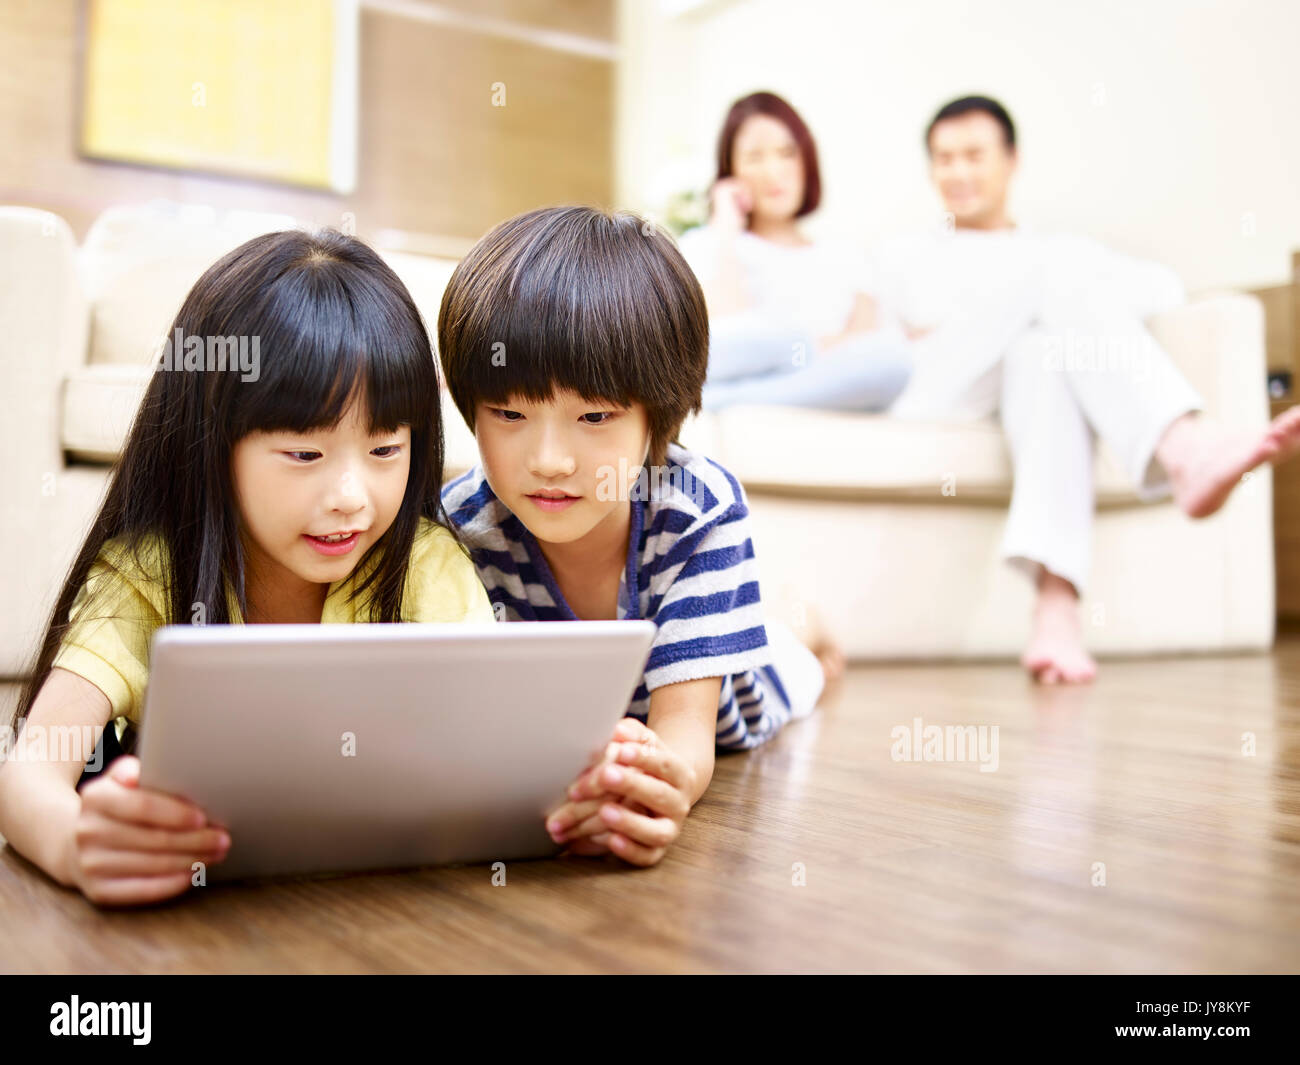 Deux enfants asiatiques lying on floor playing video game using digital tablet while parents regardant en arrière-plan. Banque D'Images